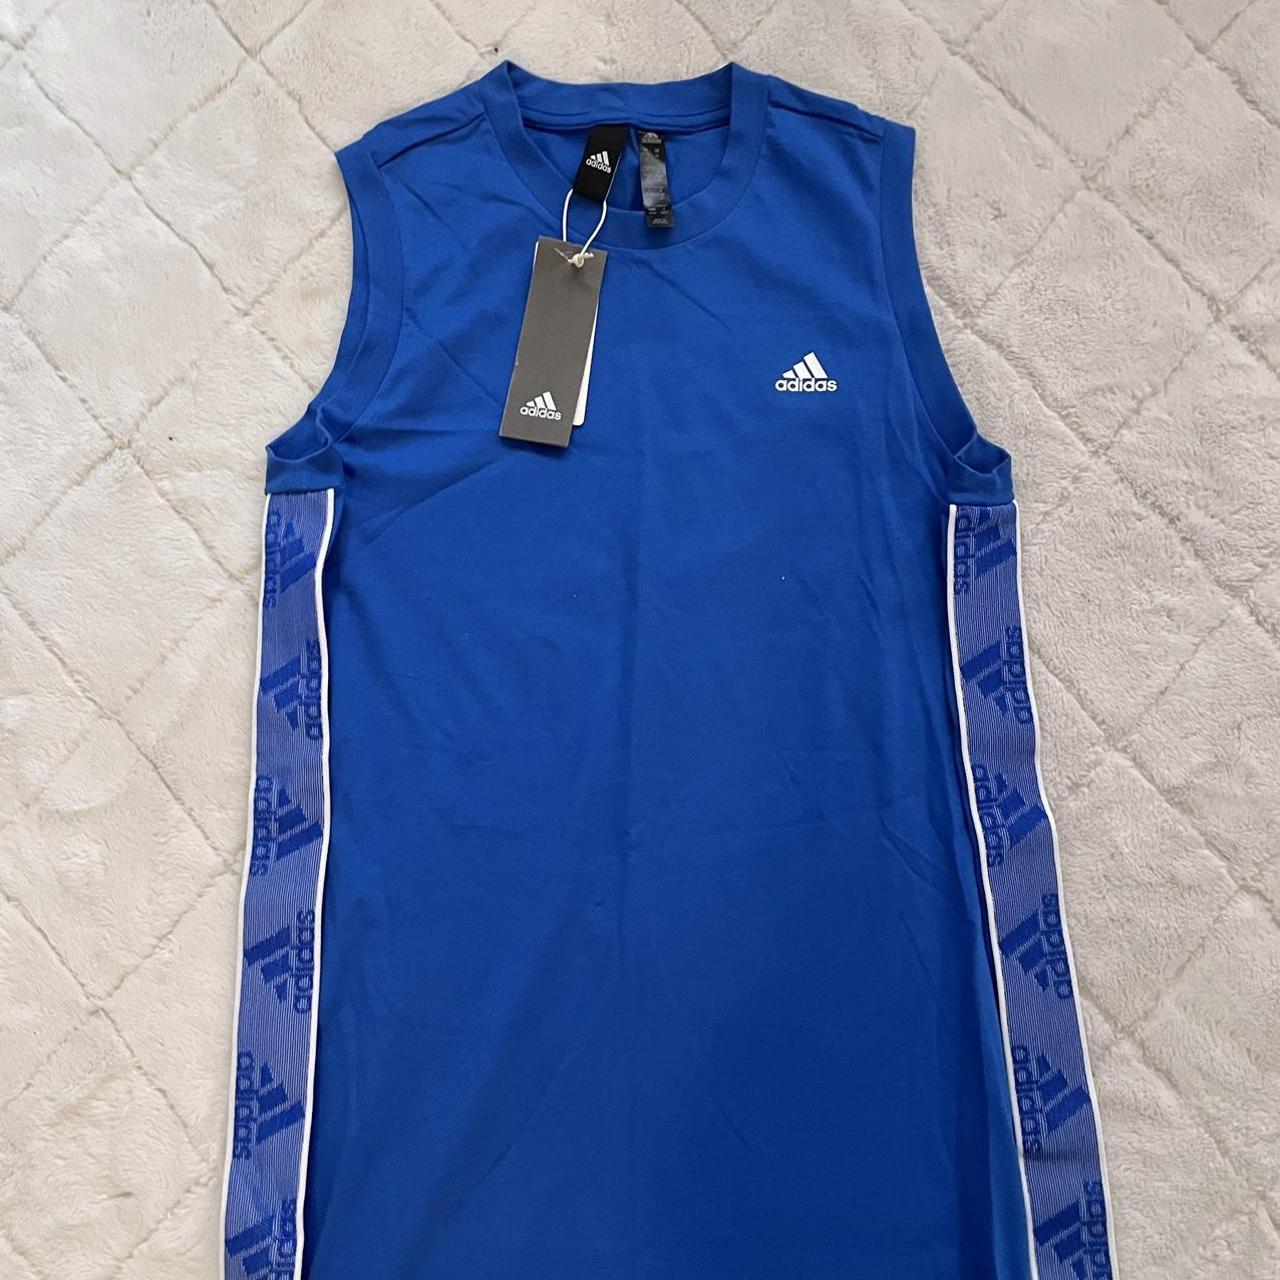 Adidas Women's Blue Dress | Depop